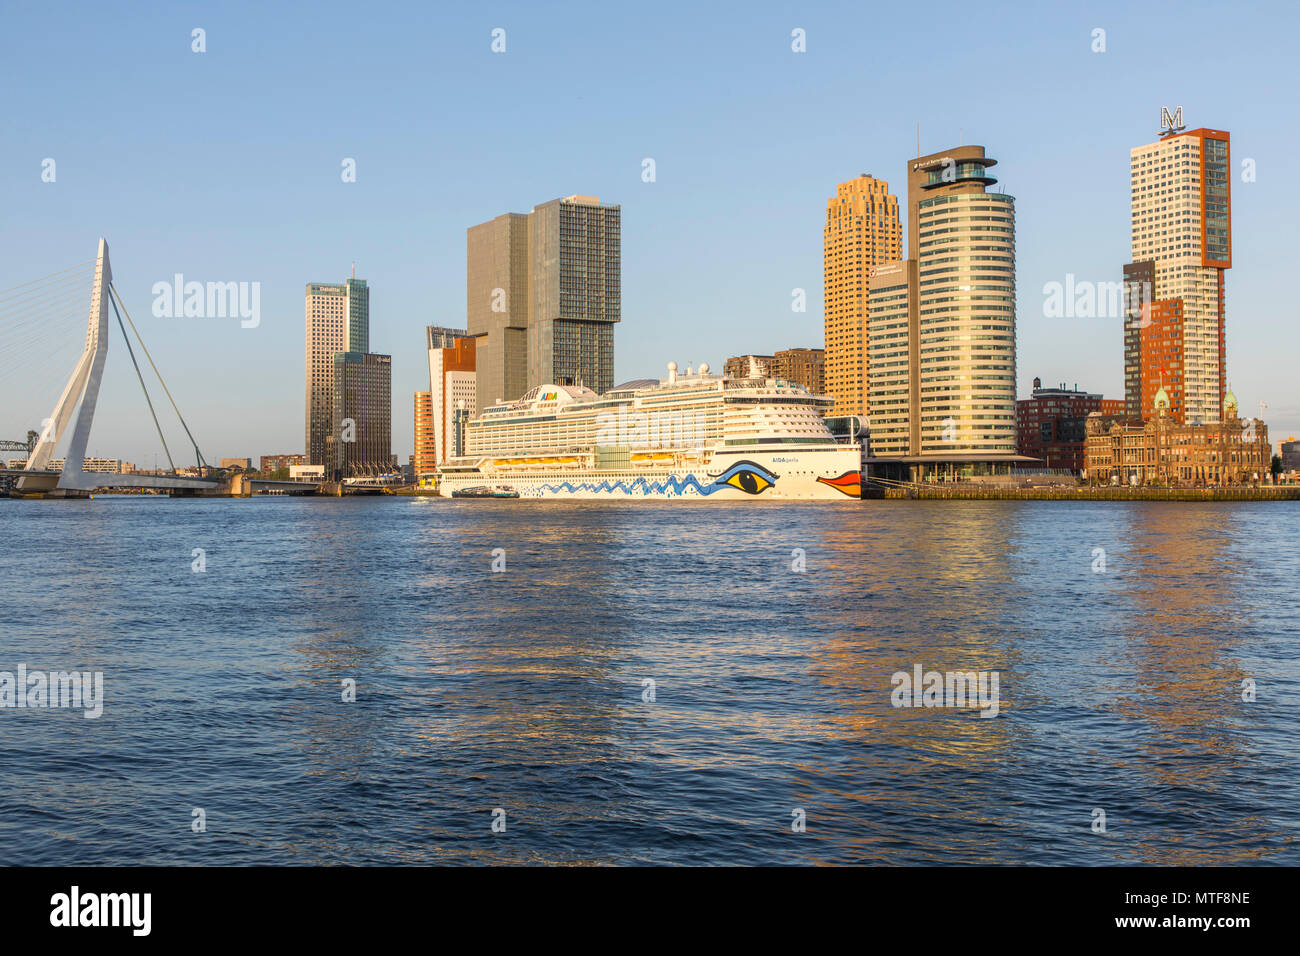 Rotterdam, Skyline auf der Nieuwe Maas, Erasmus Brücke und Wolkenkratzer im "Kop van Zuid" Bezirk, Kreuzfahrtschiff "Aida Perla' am Cruise Terminal, Stockfoto